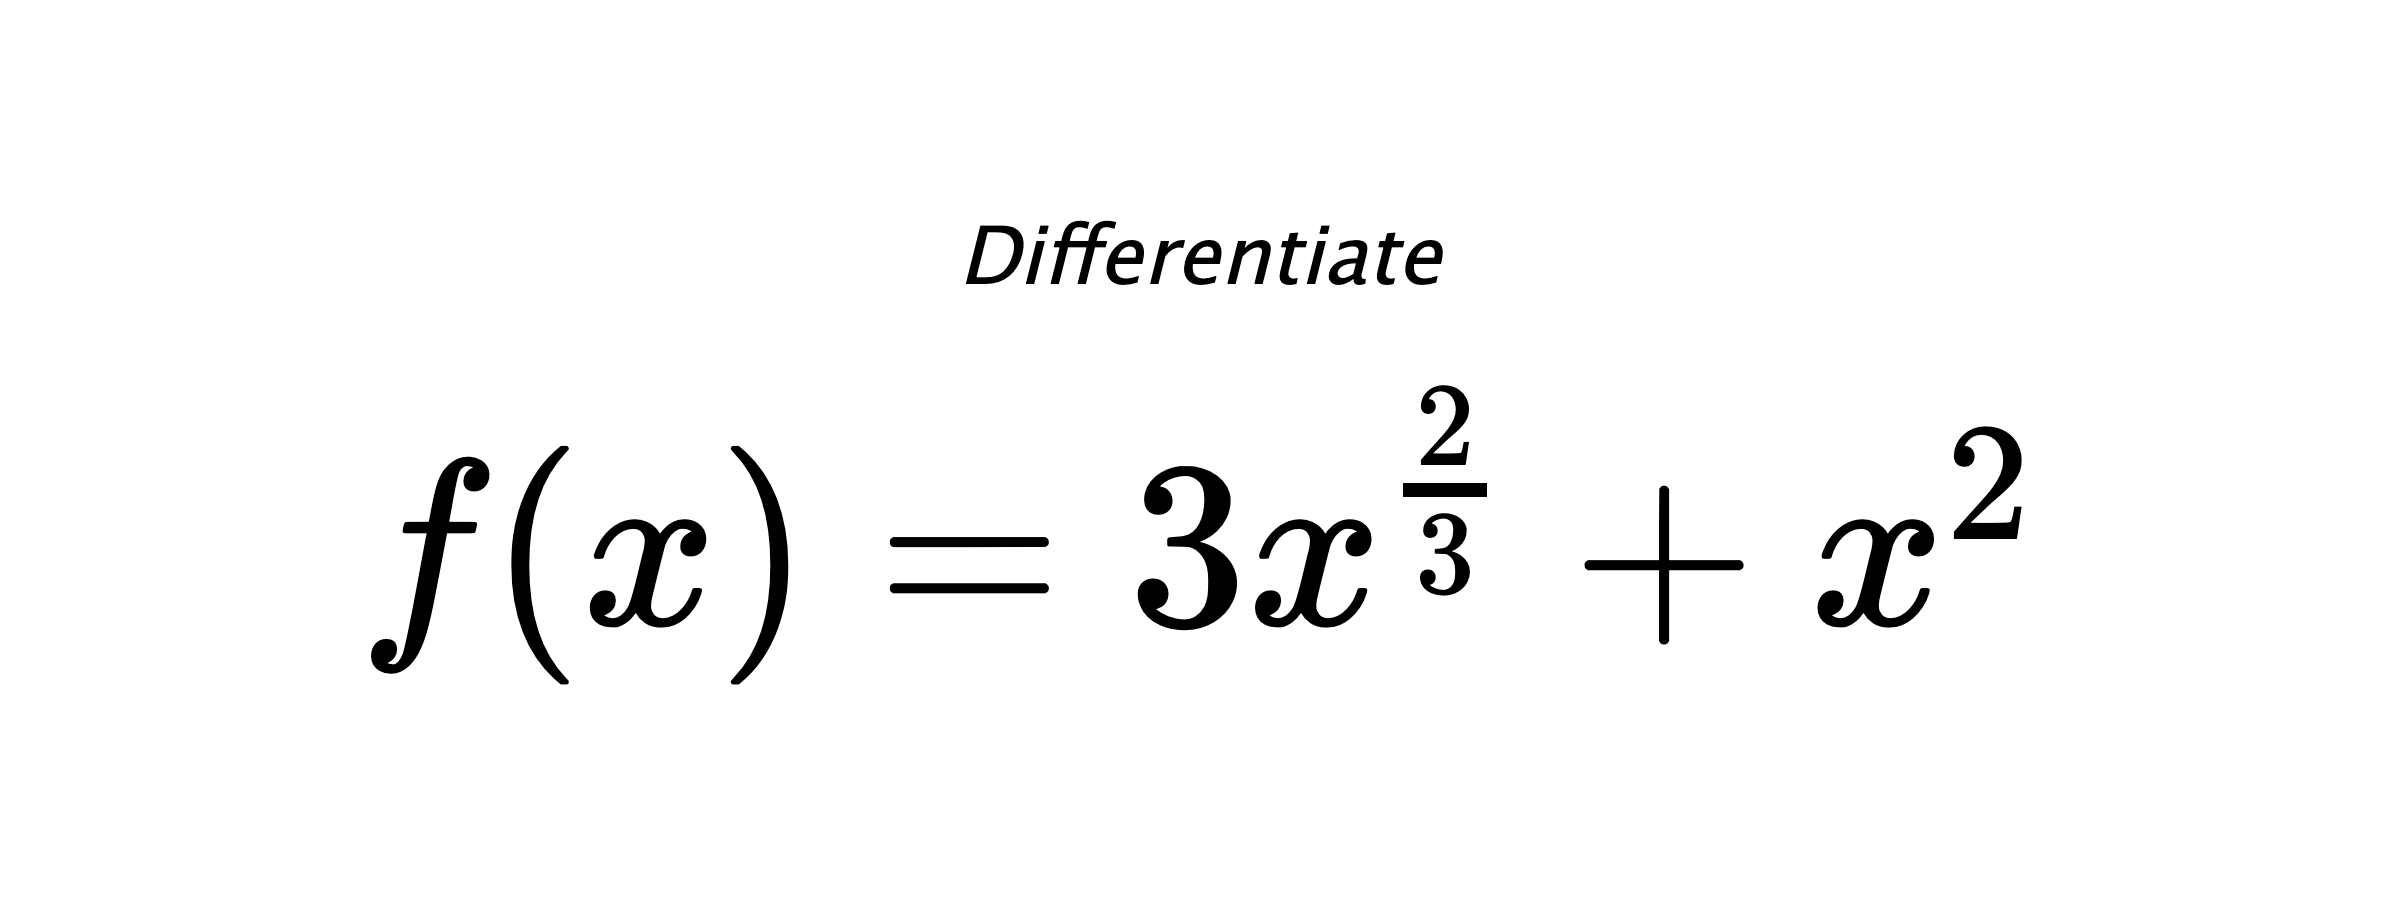 Differentiate $ f(x) = 3 x^{\frac{2}{3}} + x^{2} $